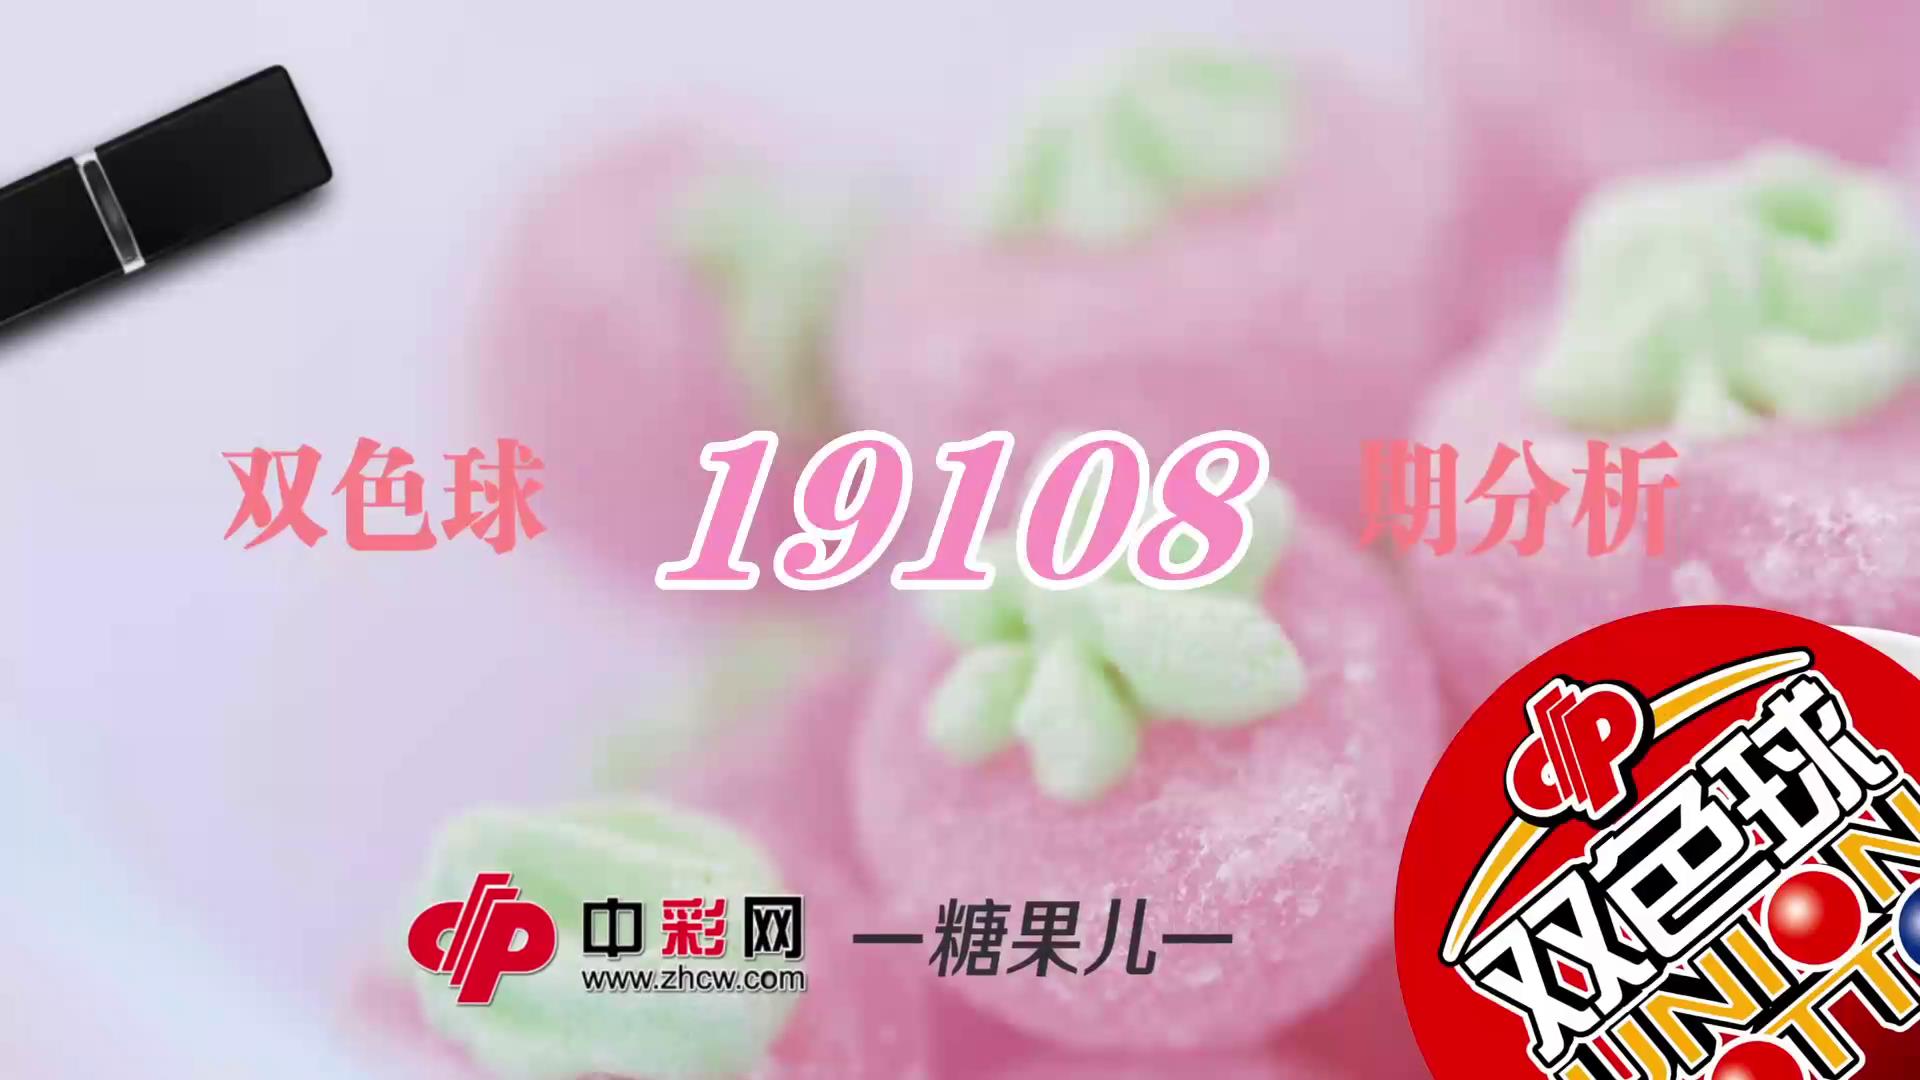 【中彩视频】糖果儿双色球第19108期